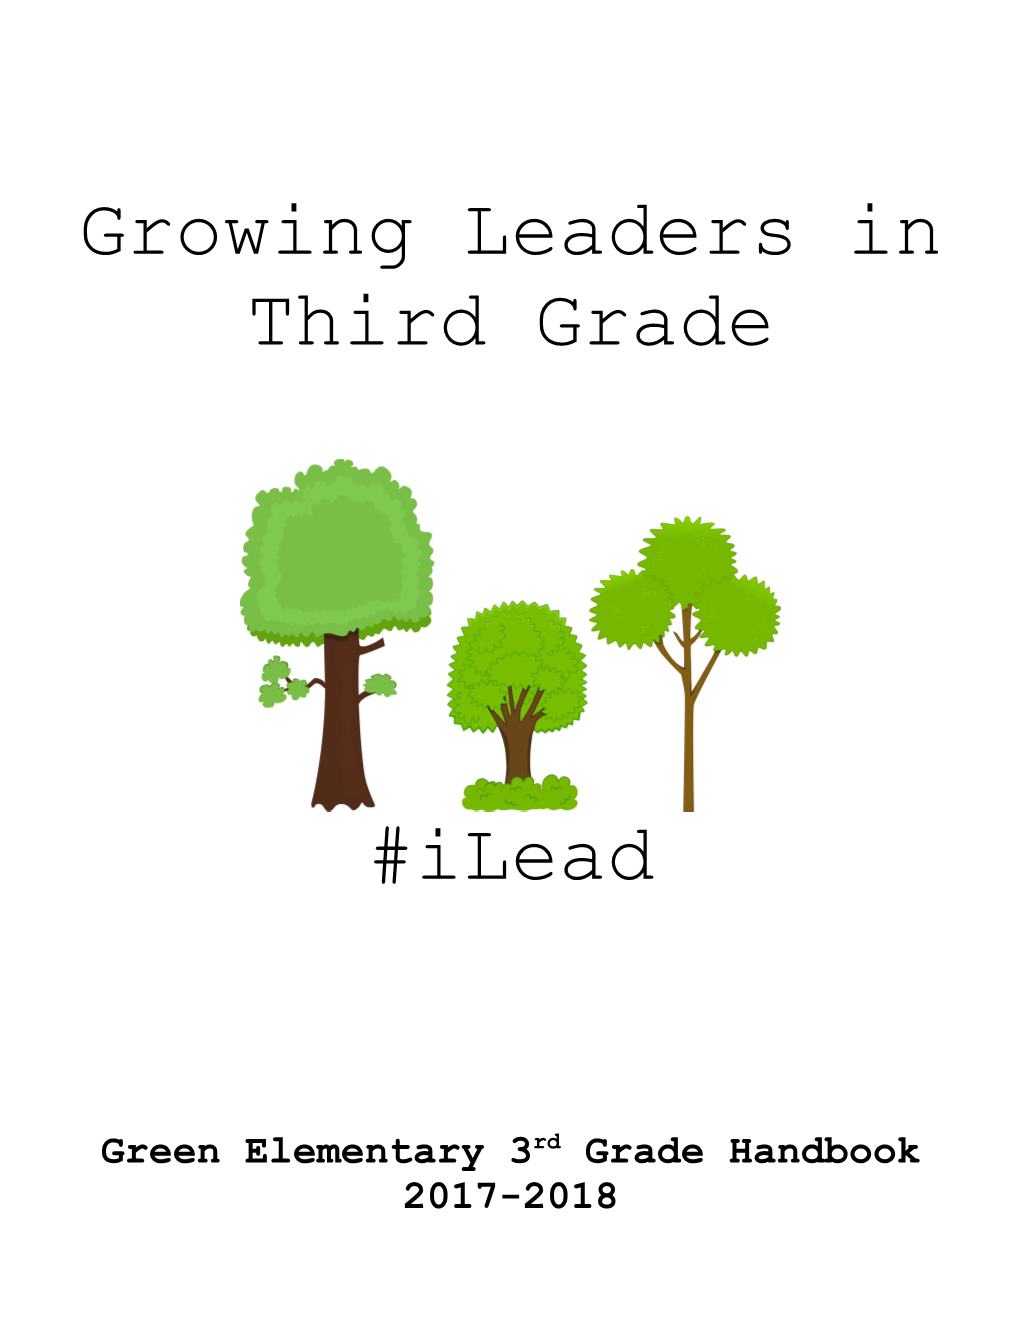 Green Elementary 3Rd Grade Handbook